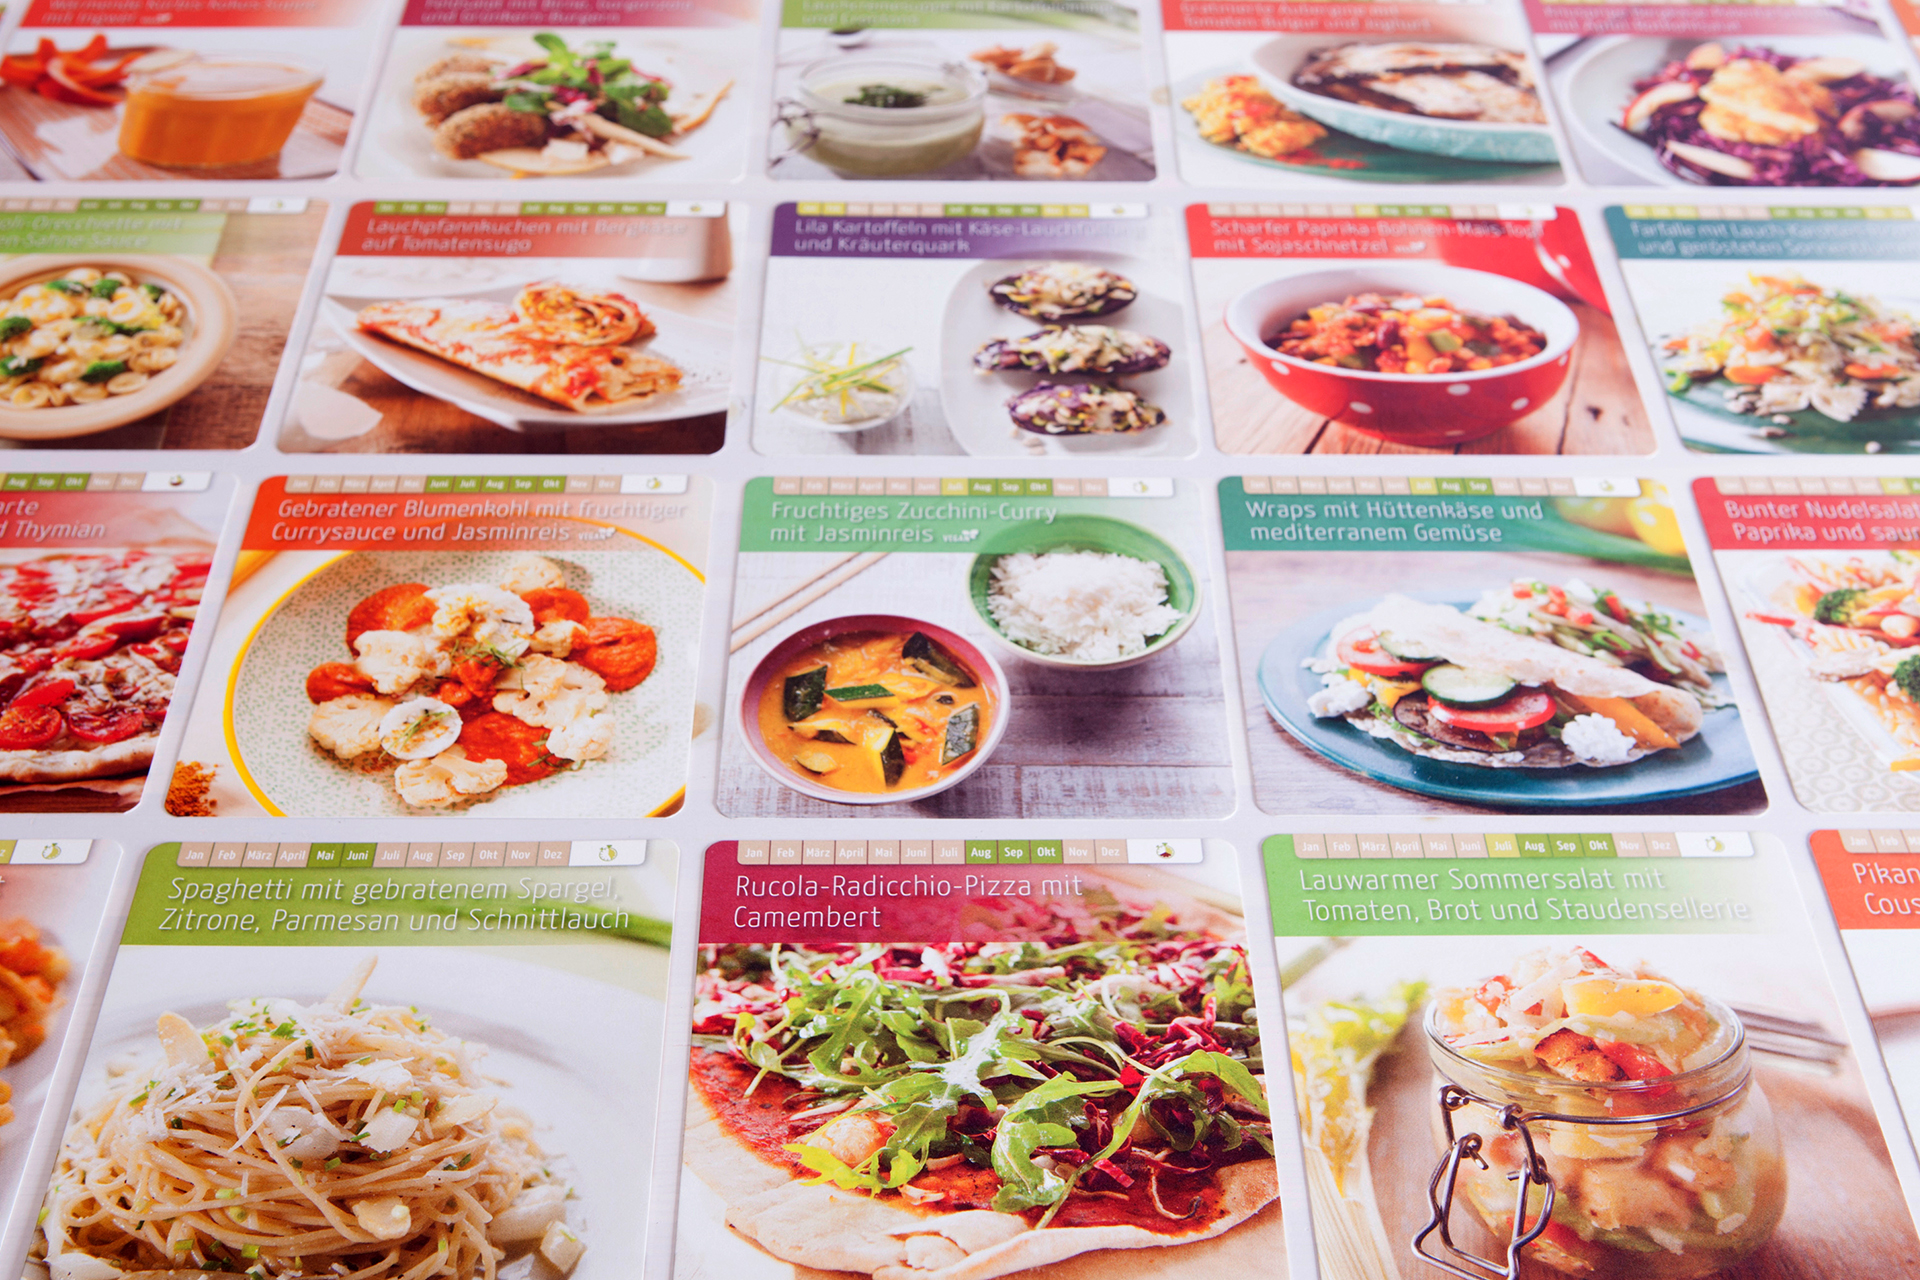 52 Rezeptkarten versprechen höchstes kulinarisches Feierabendglück